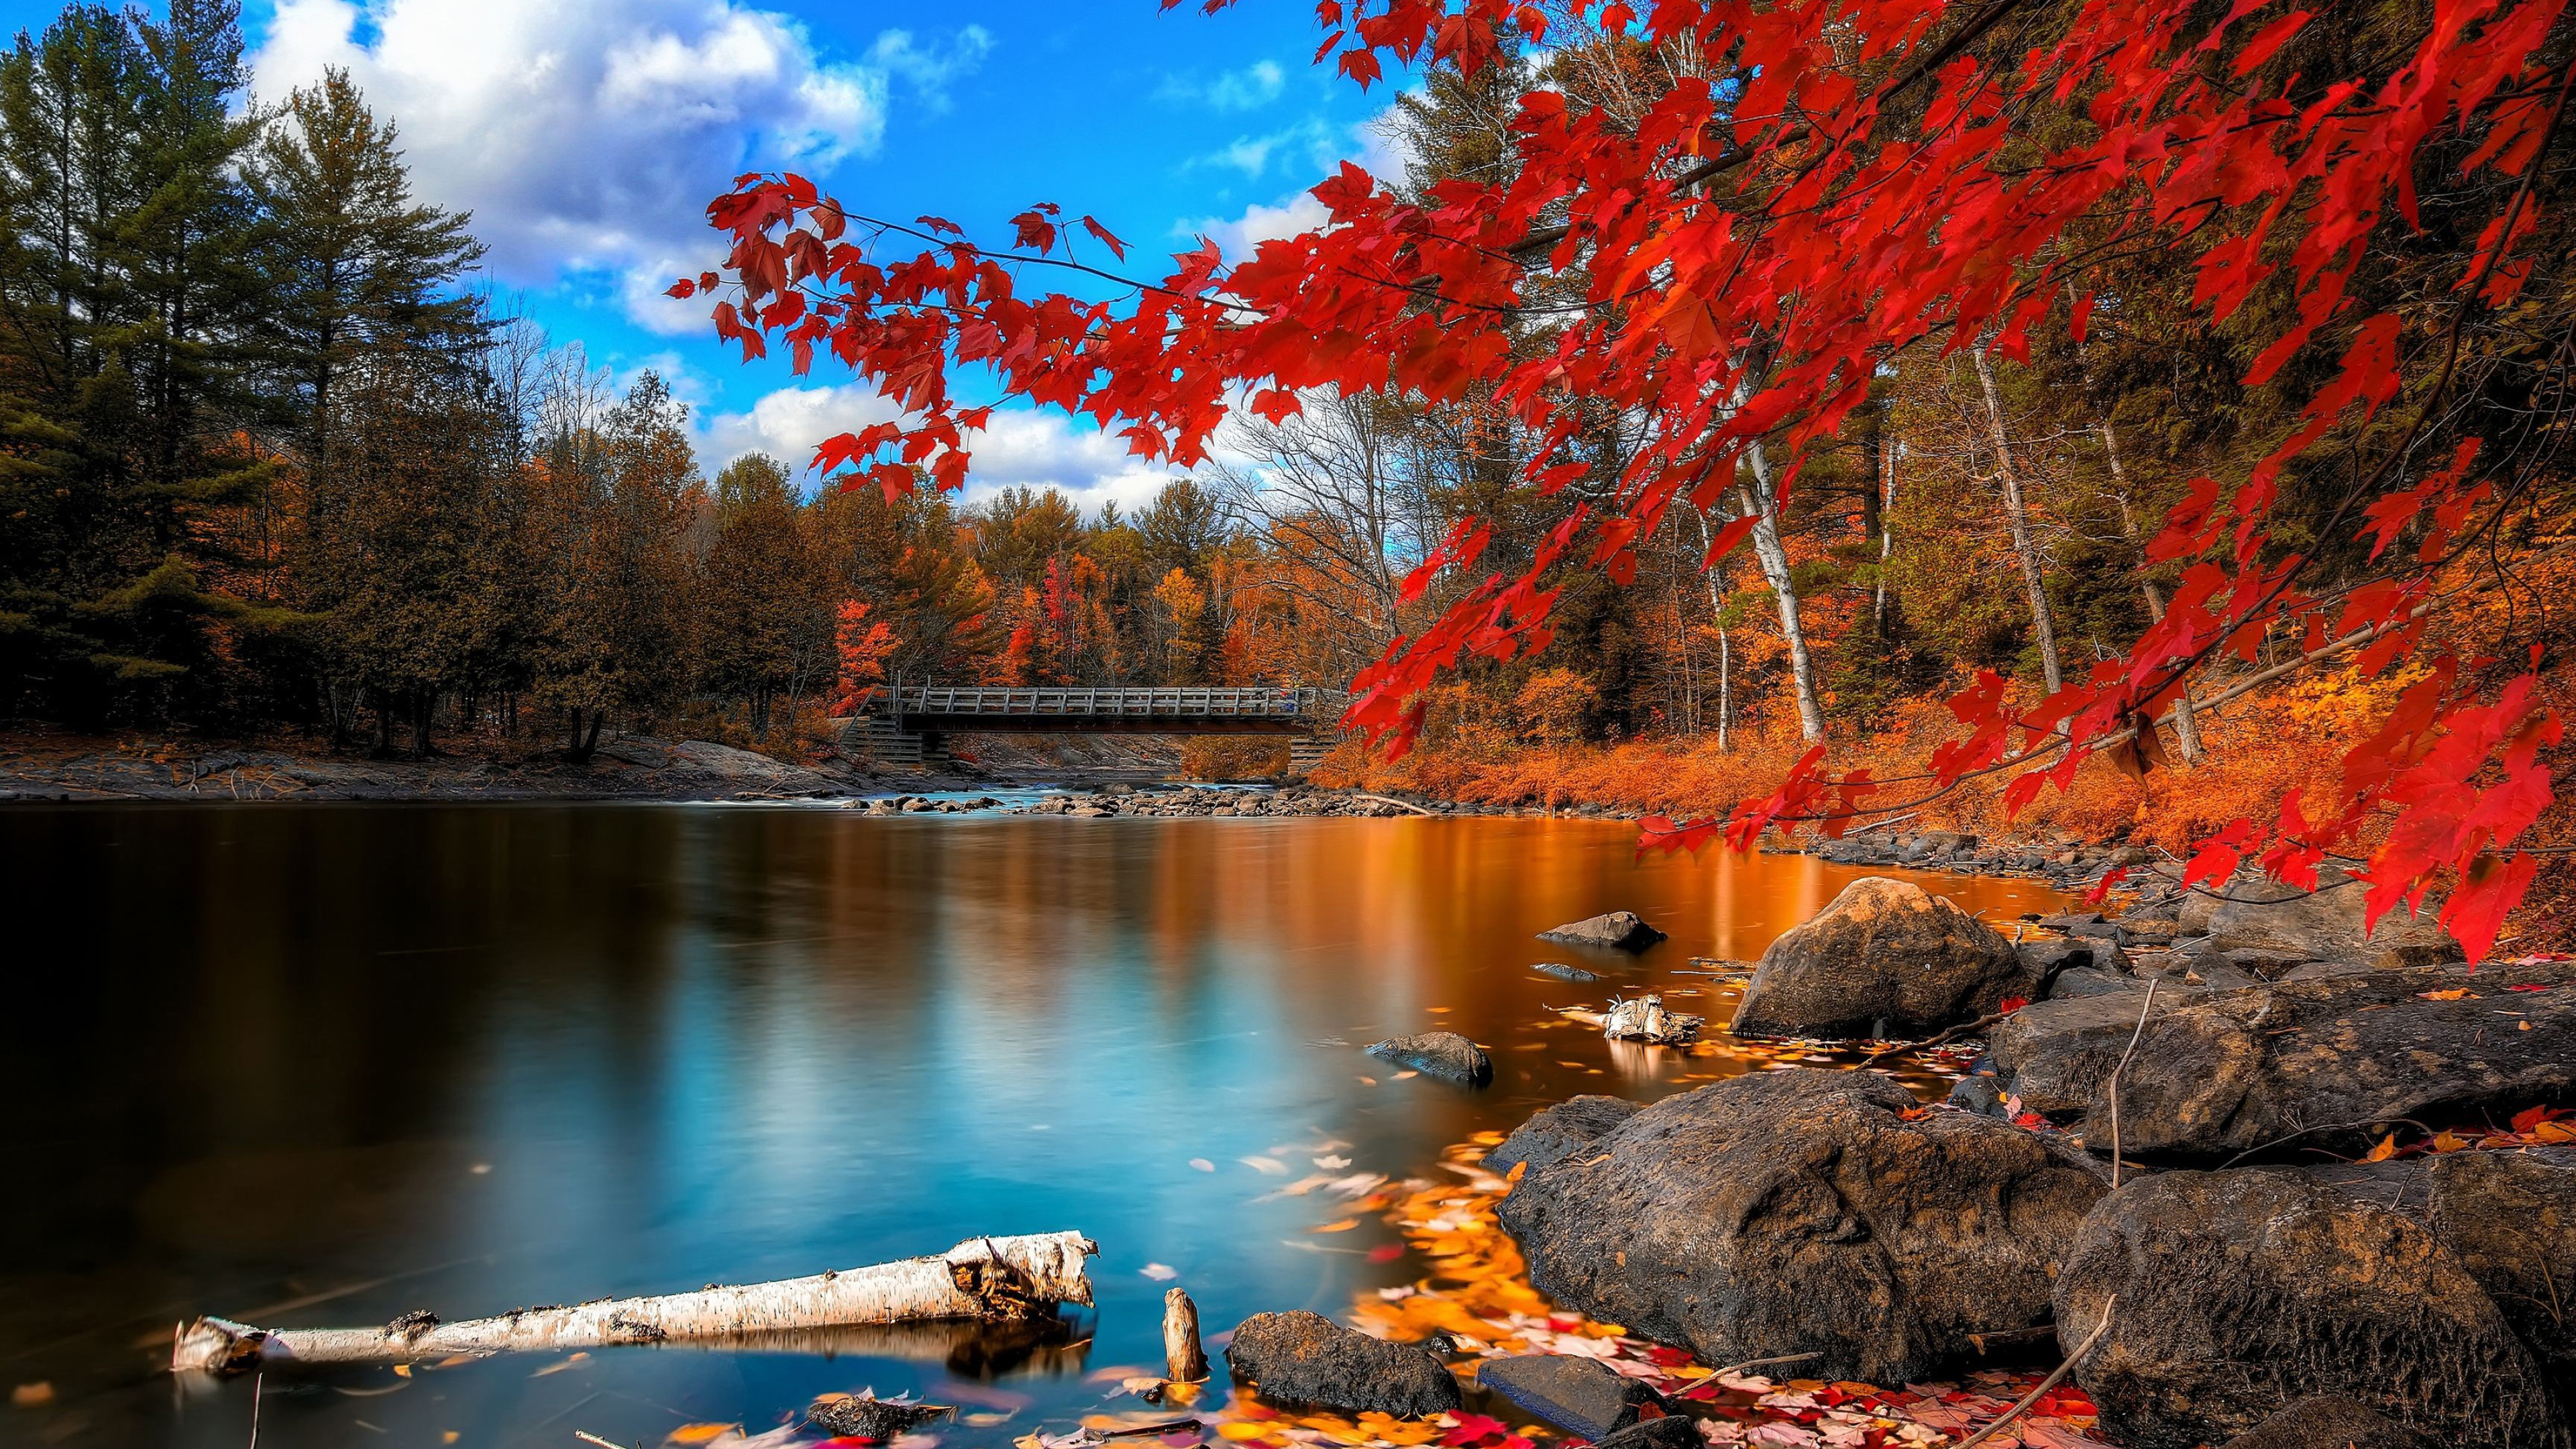 Autumn desktop wallpapers, 4K Ultra HD, Nature-inspired backgrounds, Serene scenes, 3840x2160 4K Desktop